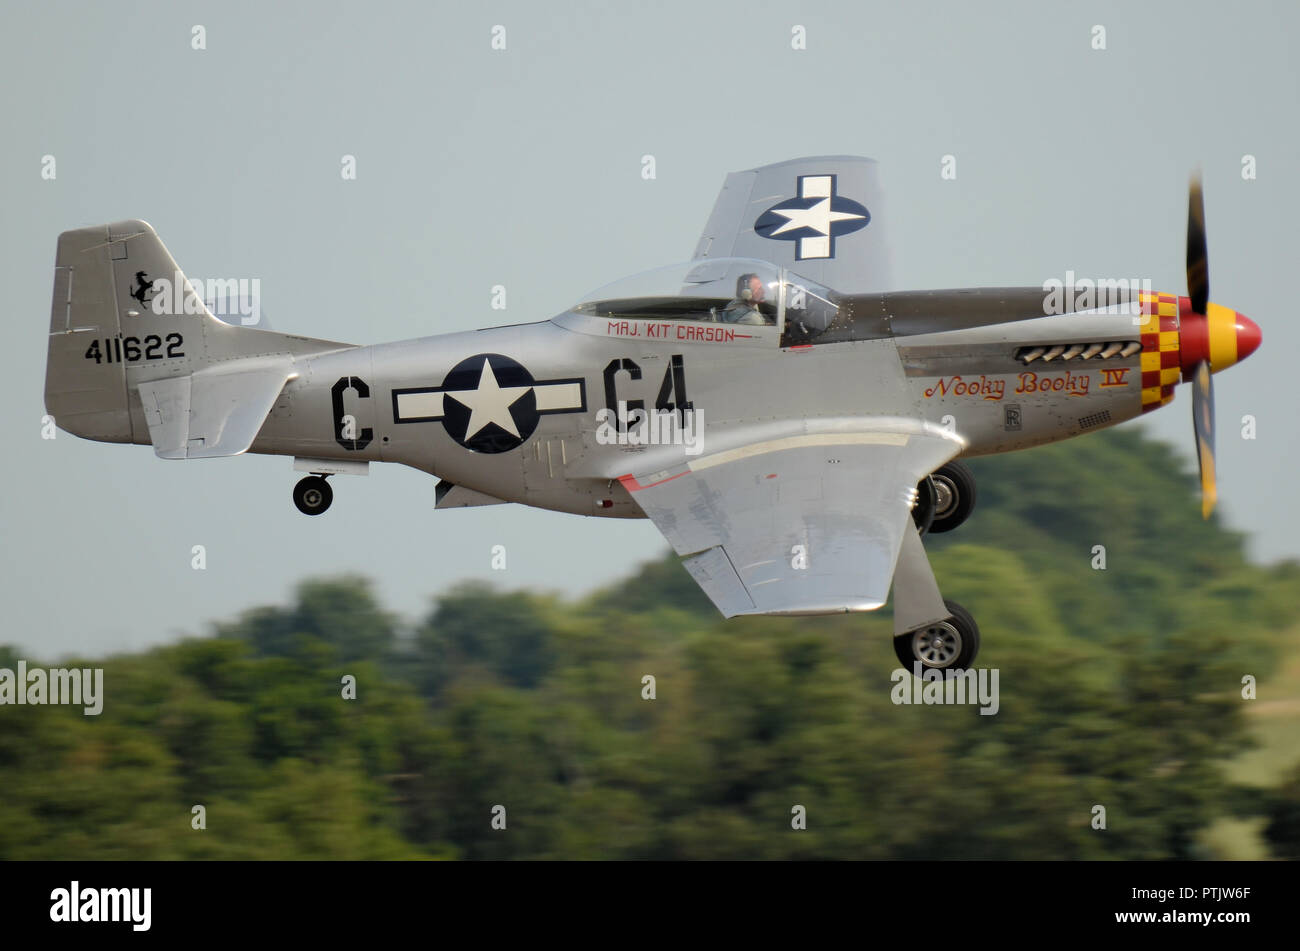 North American P-51 Mustang avión de combate llamado Nooky Booky IV volando en un festival aéreo. Pasado volando bajo los árboles. Abajo del tren de rodaje. Espacio para copiar Foto de stock